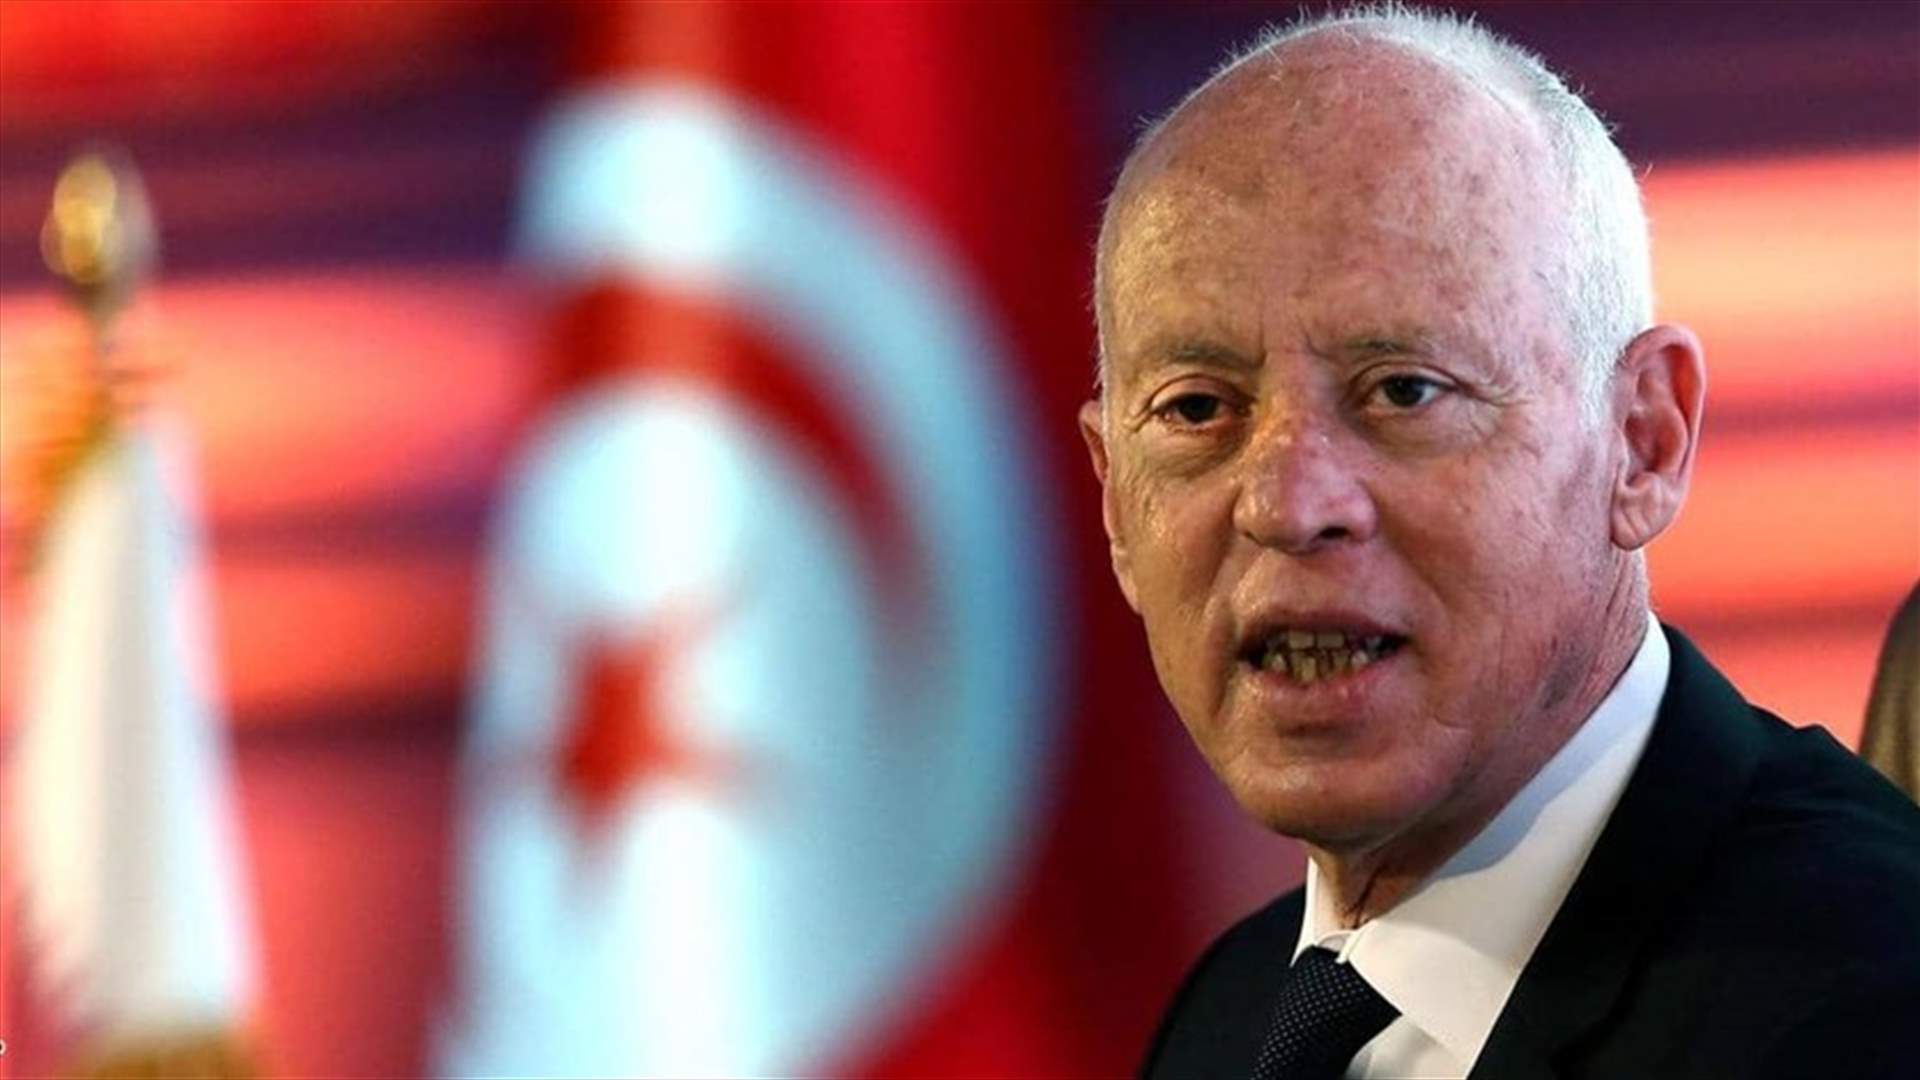 الرئيس التونسي يقول إنه سيغير قانون الانتخابات